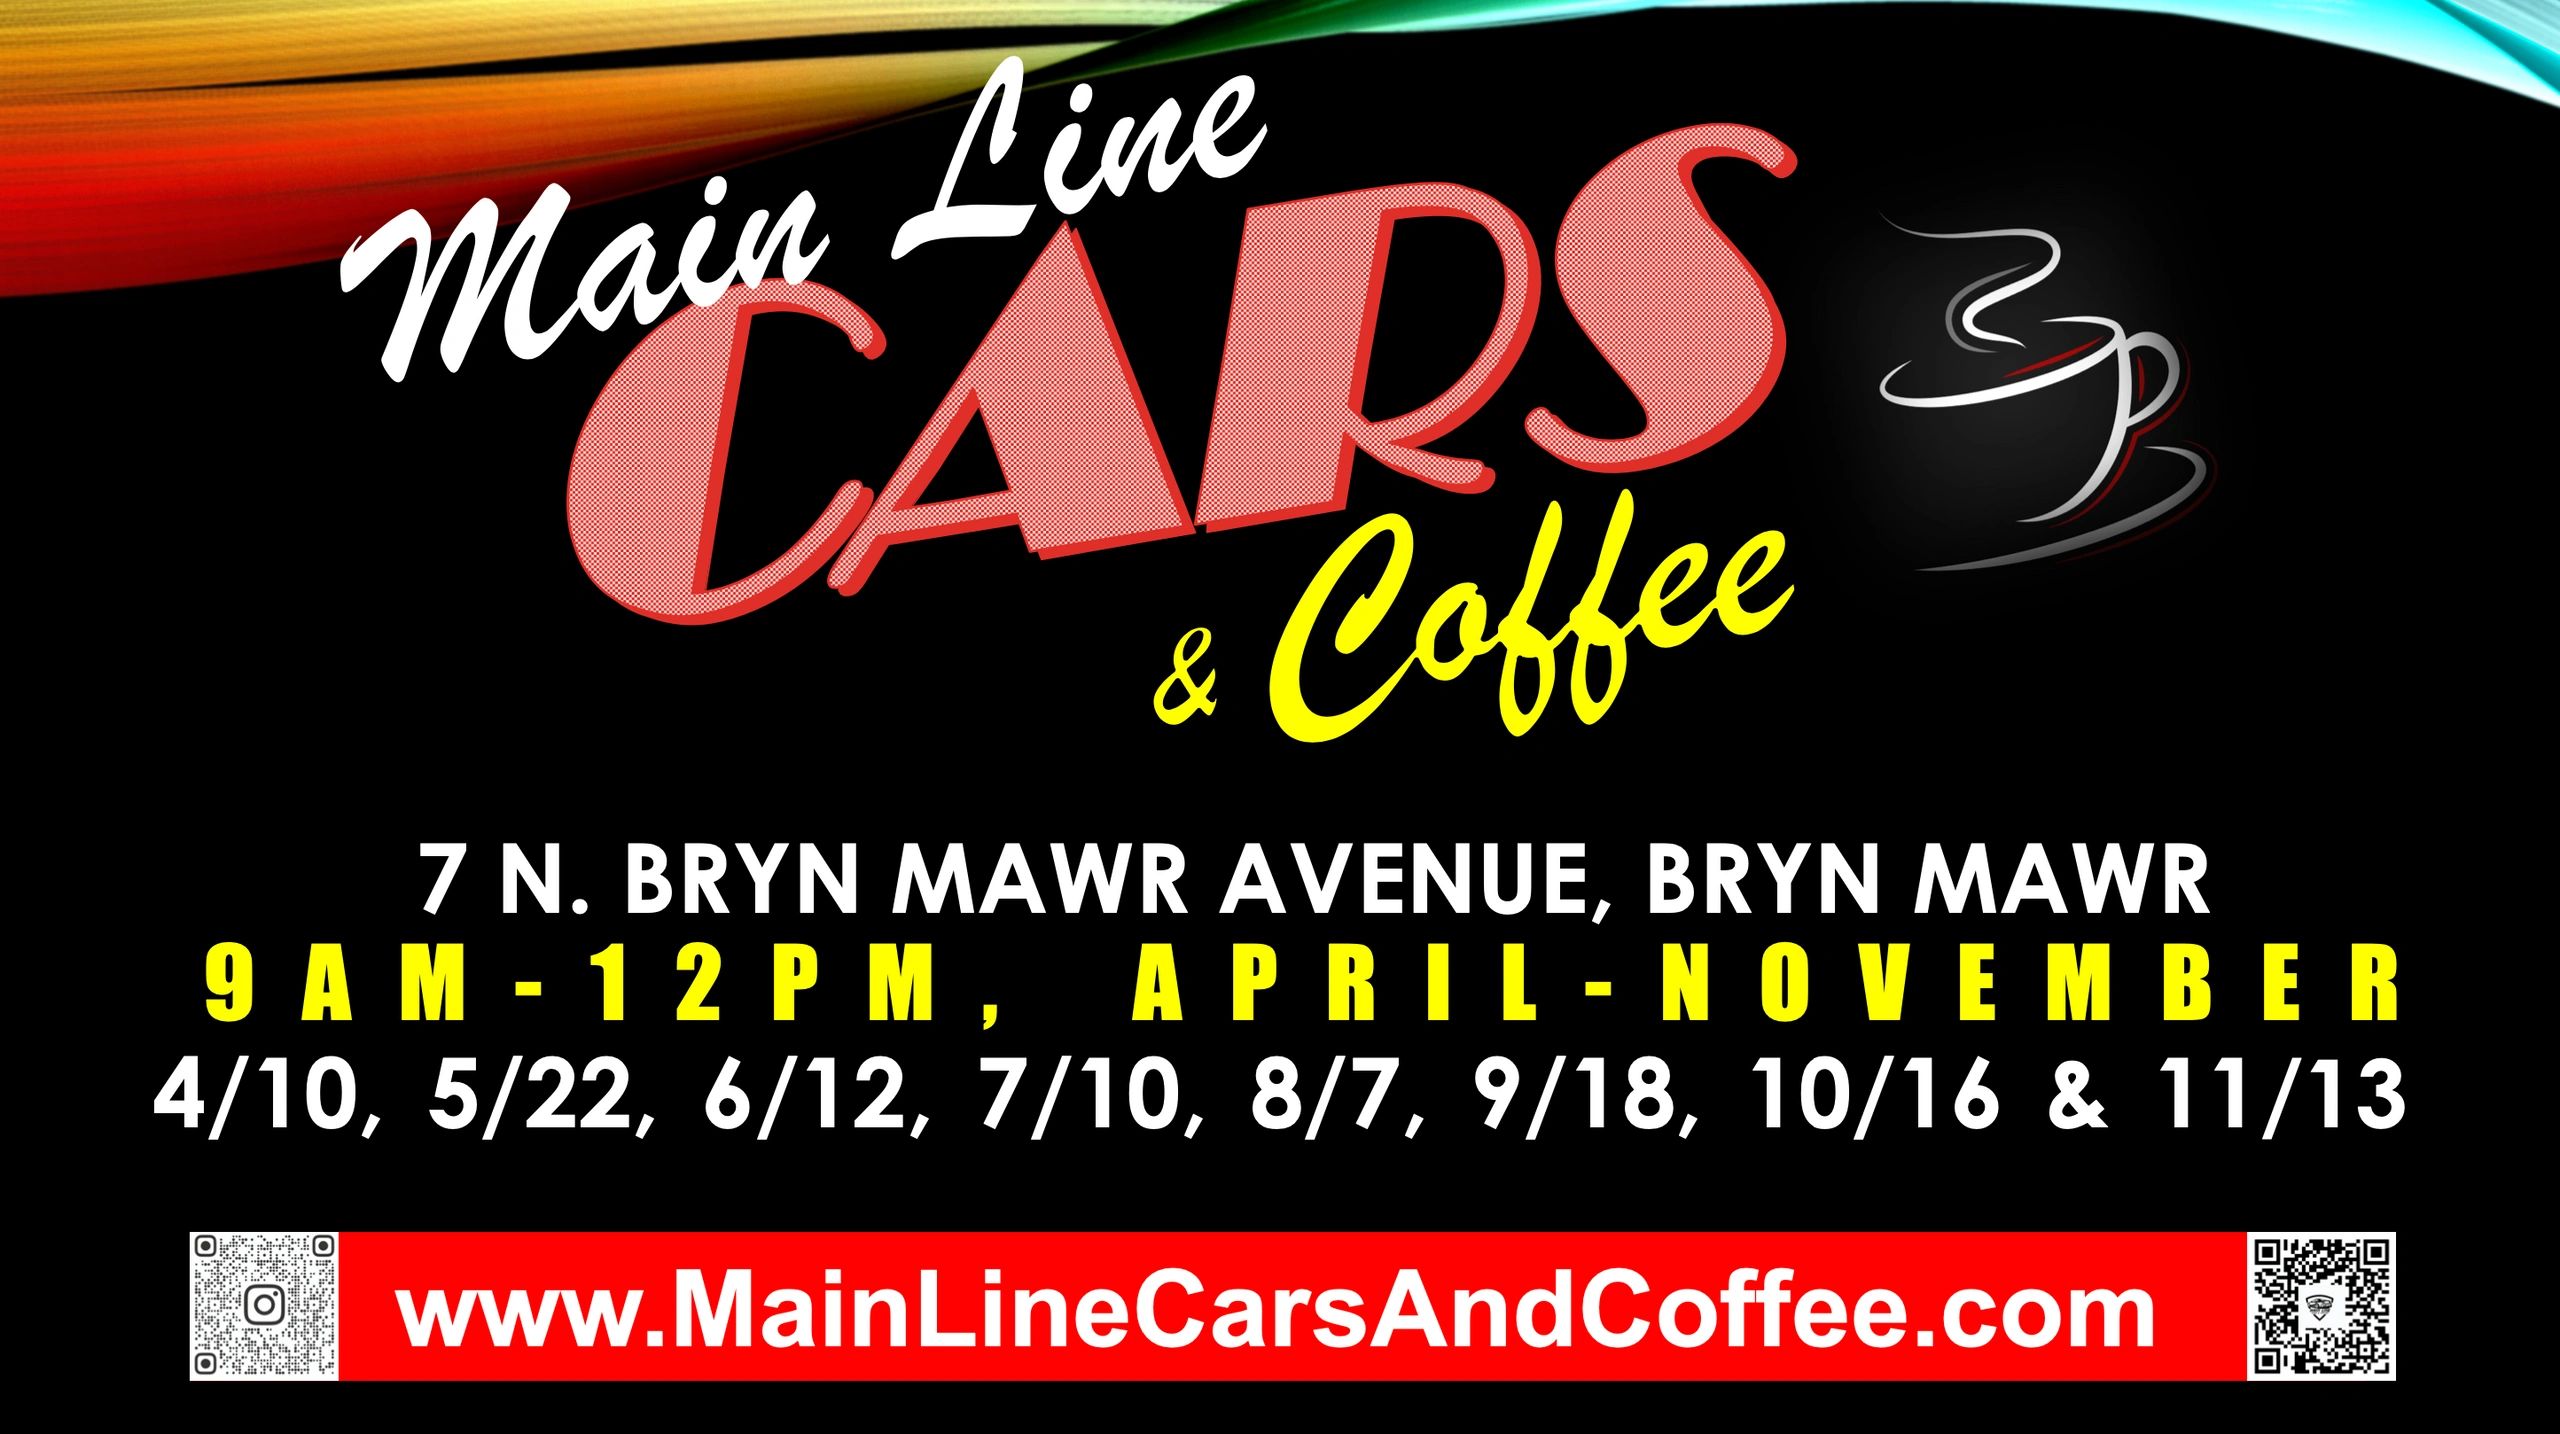 Main Line Cars & Coffee - Home